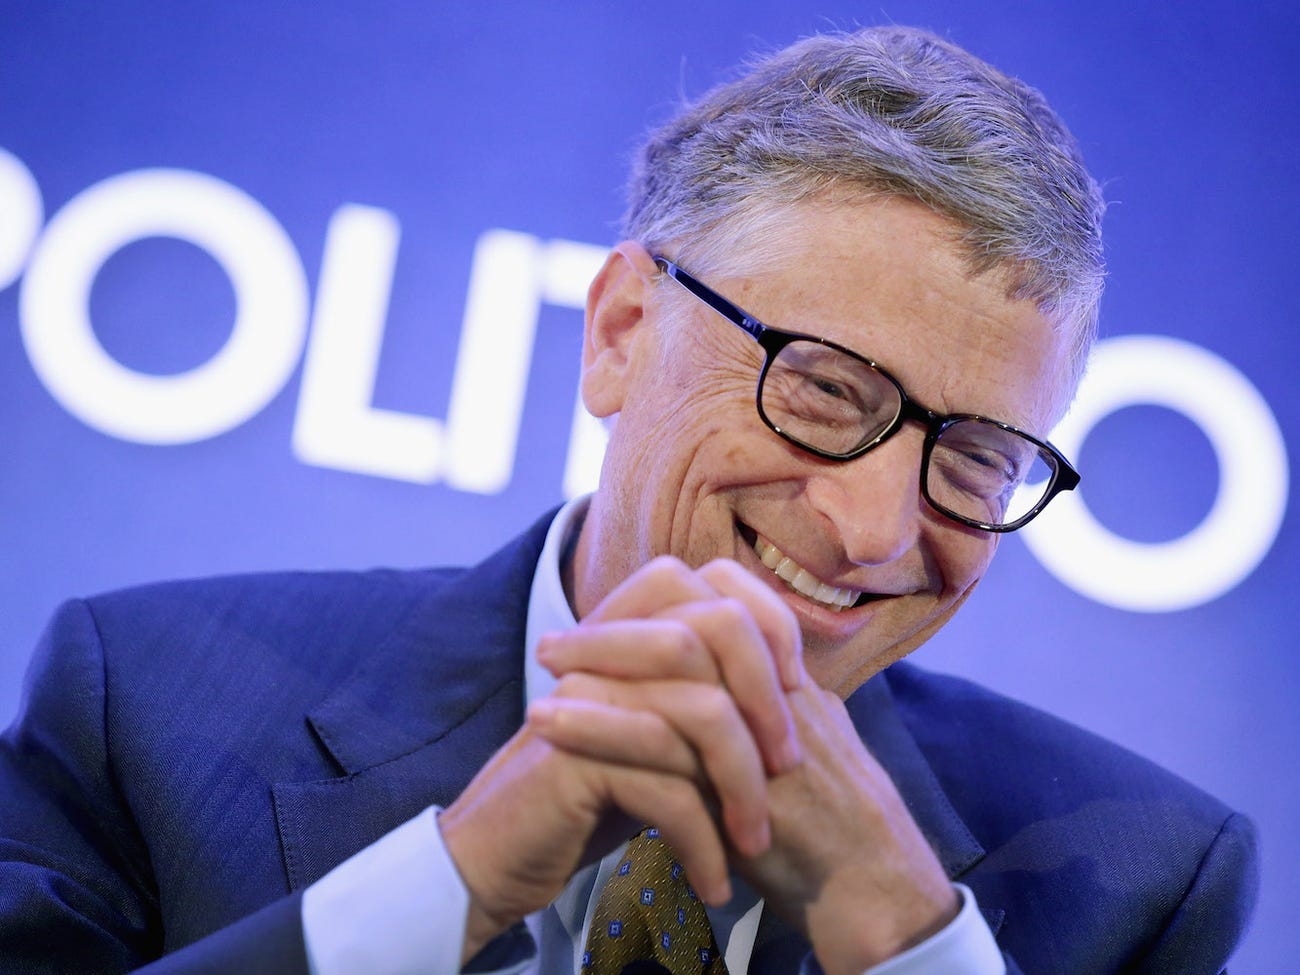 Đời sống - Bill Gates còn bao nhiều tiền sau thông báo chuyển 20 tỷ USD cho quỹ từ thiện?